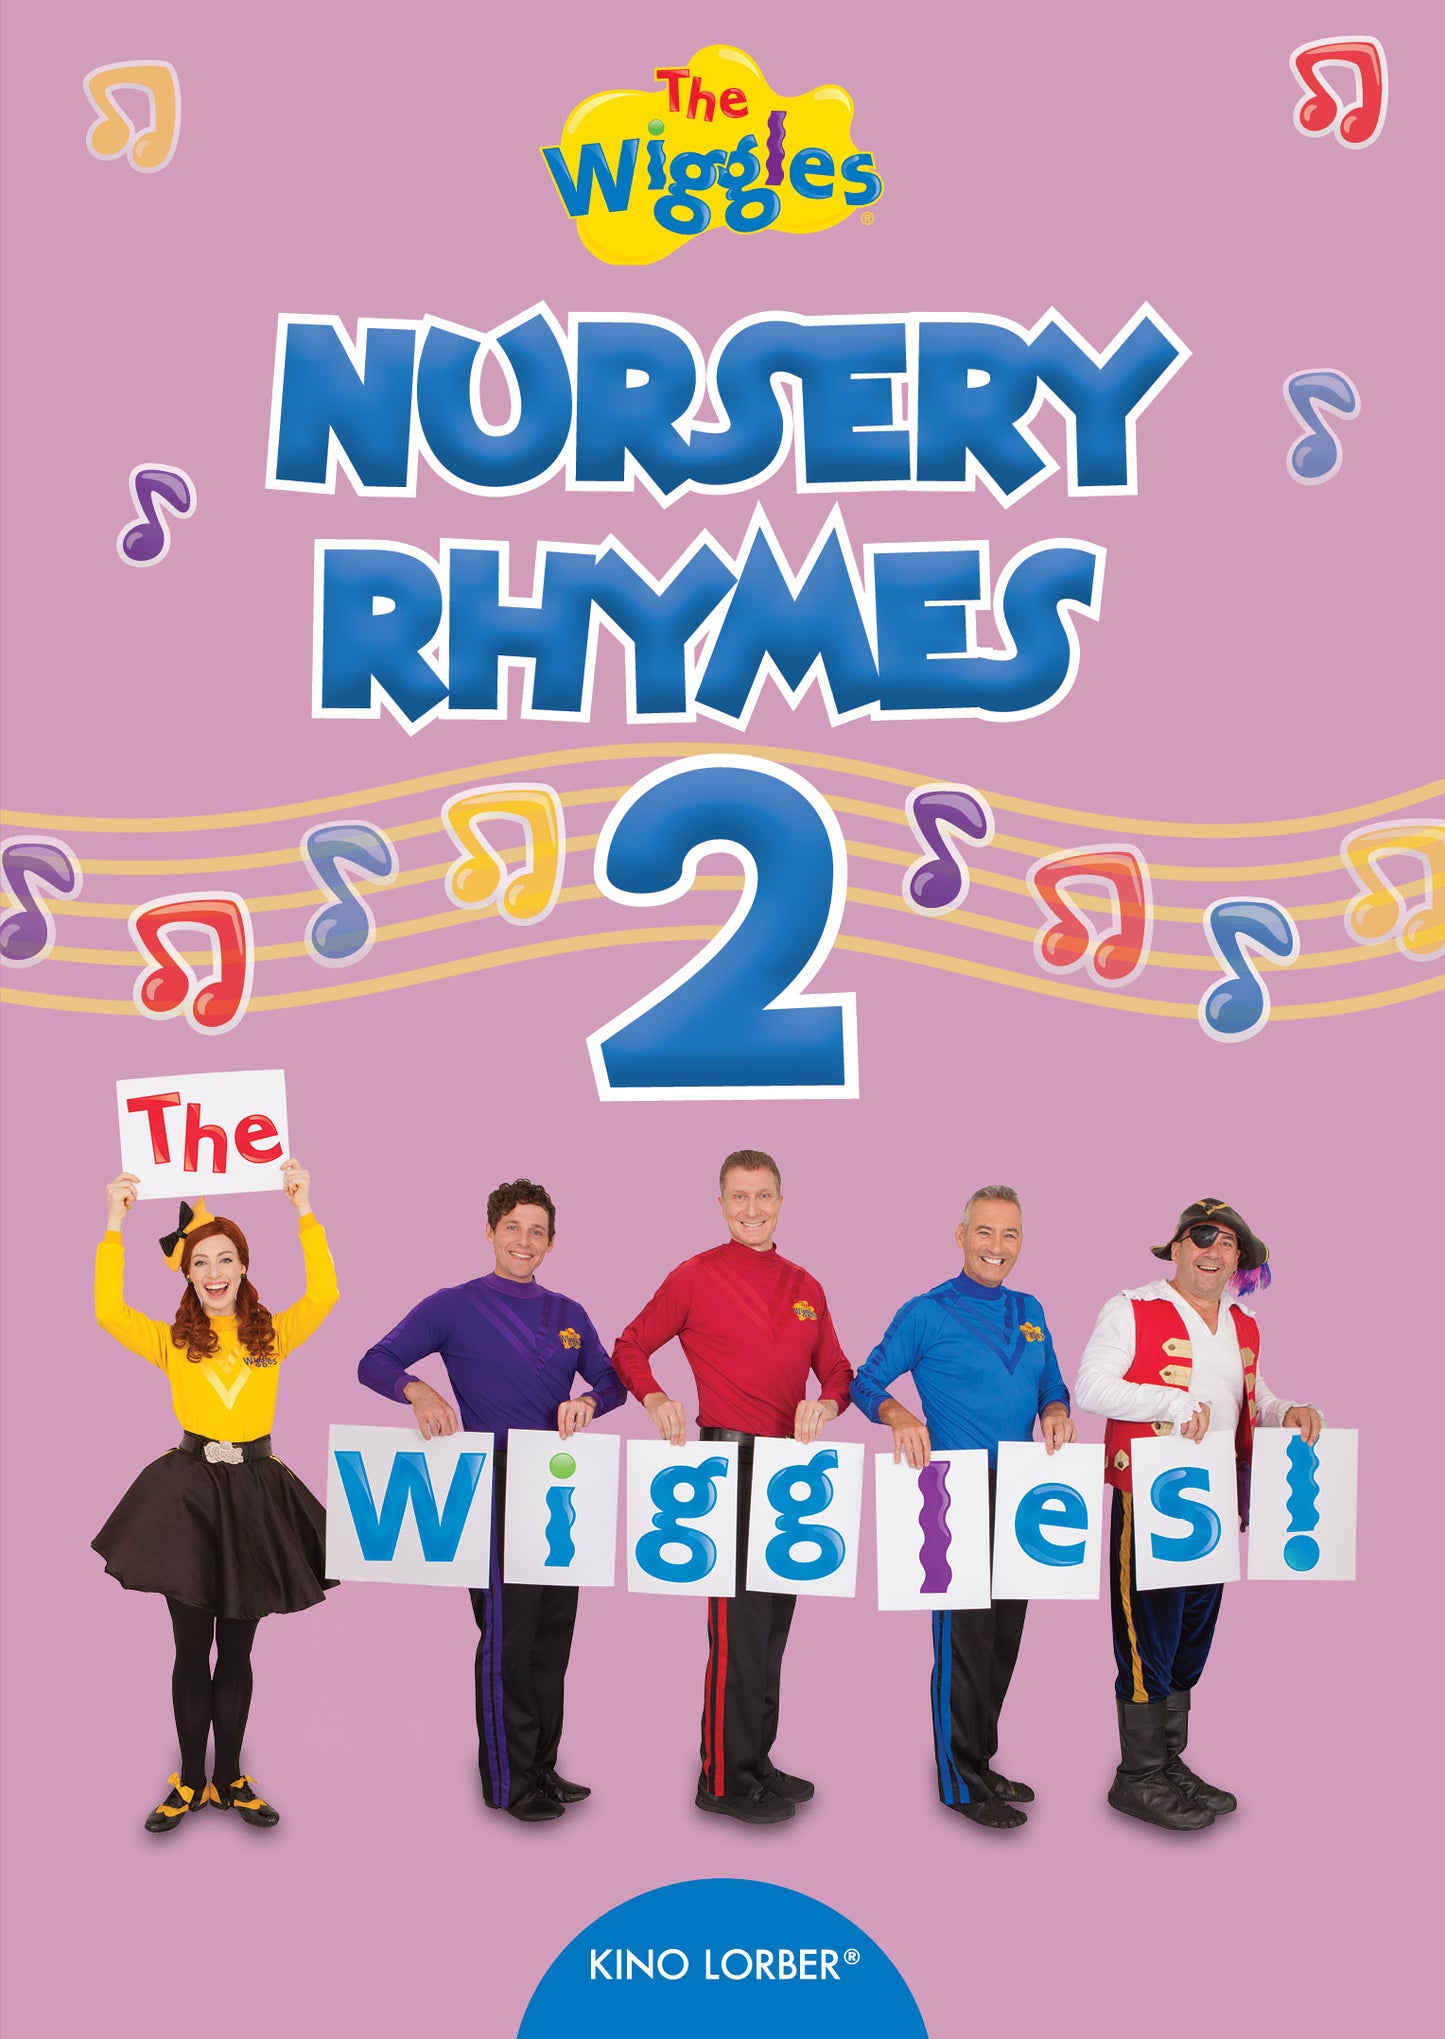 Wiggles: Nursery Rhymes 2 cover art